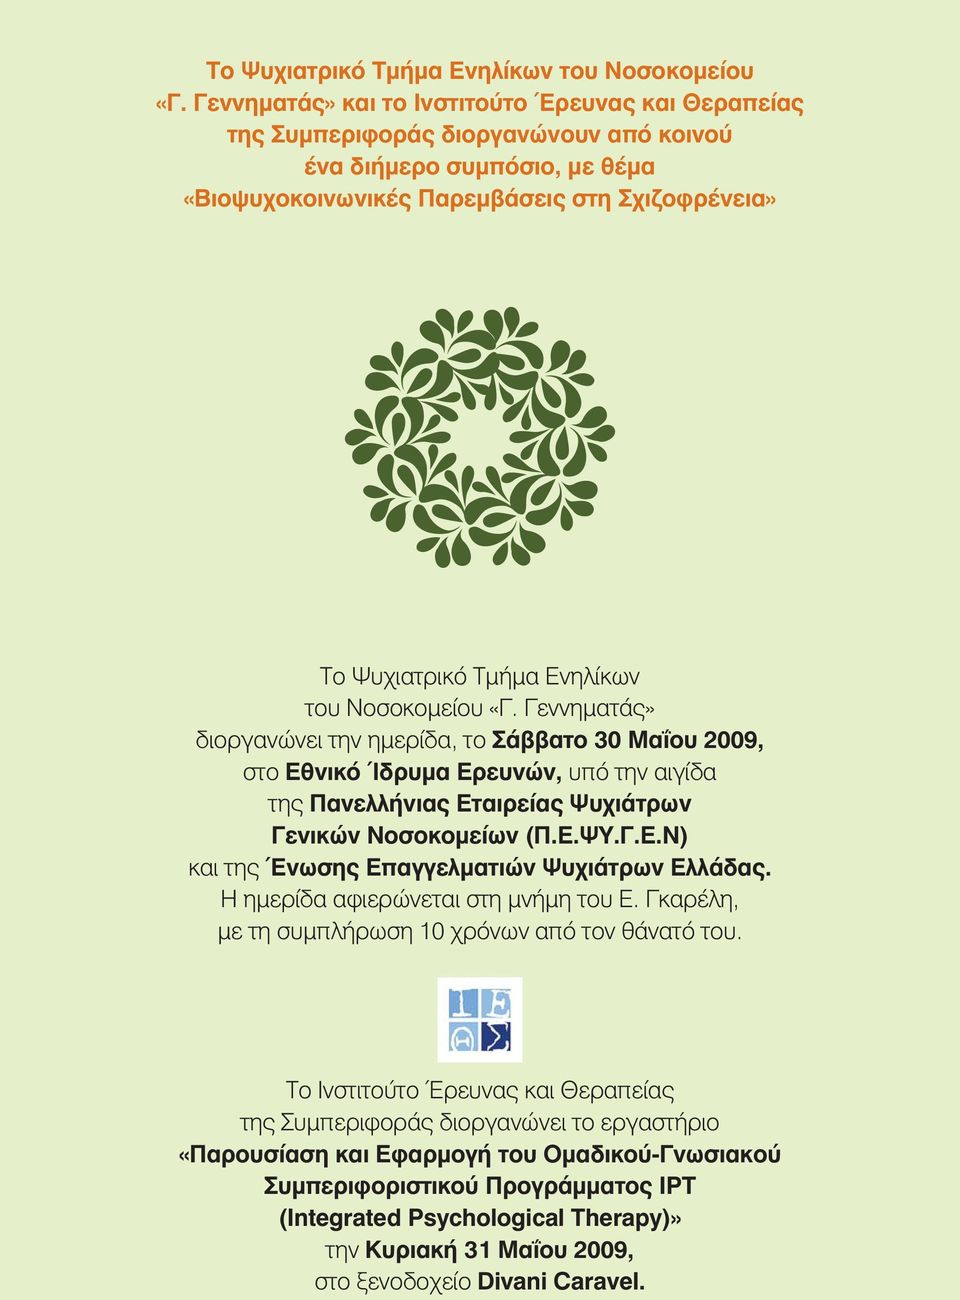 την ημερίδα, το Σάββατο 30 Μαΐου 2009, στο Εθνικό Ίδρυμα Ερευνών, υπό την αιγίδα της Πανελλήνιας Εταιρείας Ψυχιάτρων Γενικών Νοσοκομείων (Π.Ε.ΨΥ.Γ.Ε.Ν) και της Ένωσης Επαγγελματιών Ψυχιάτρων Ελλάδας.